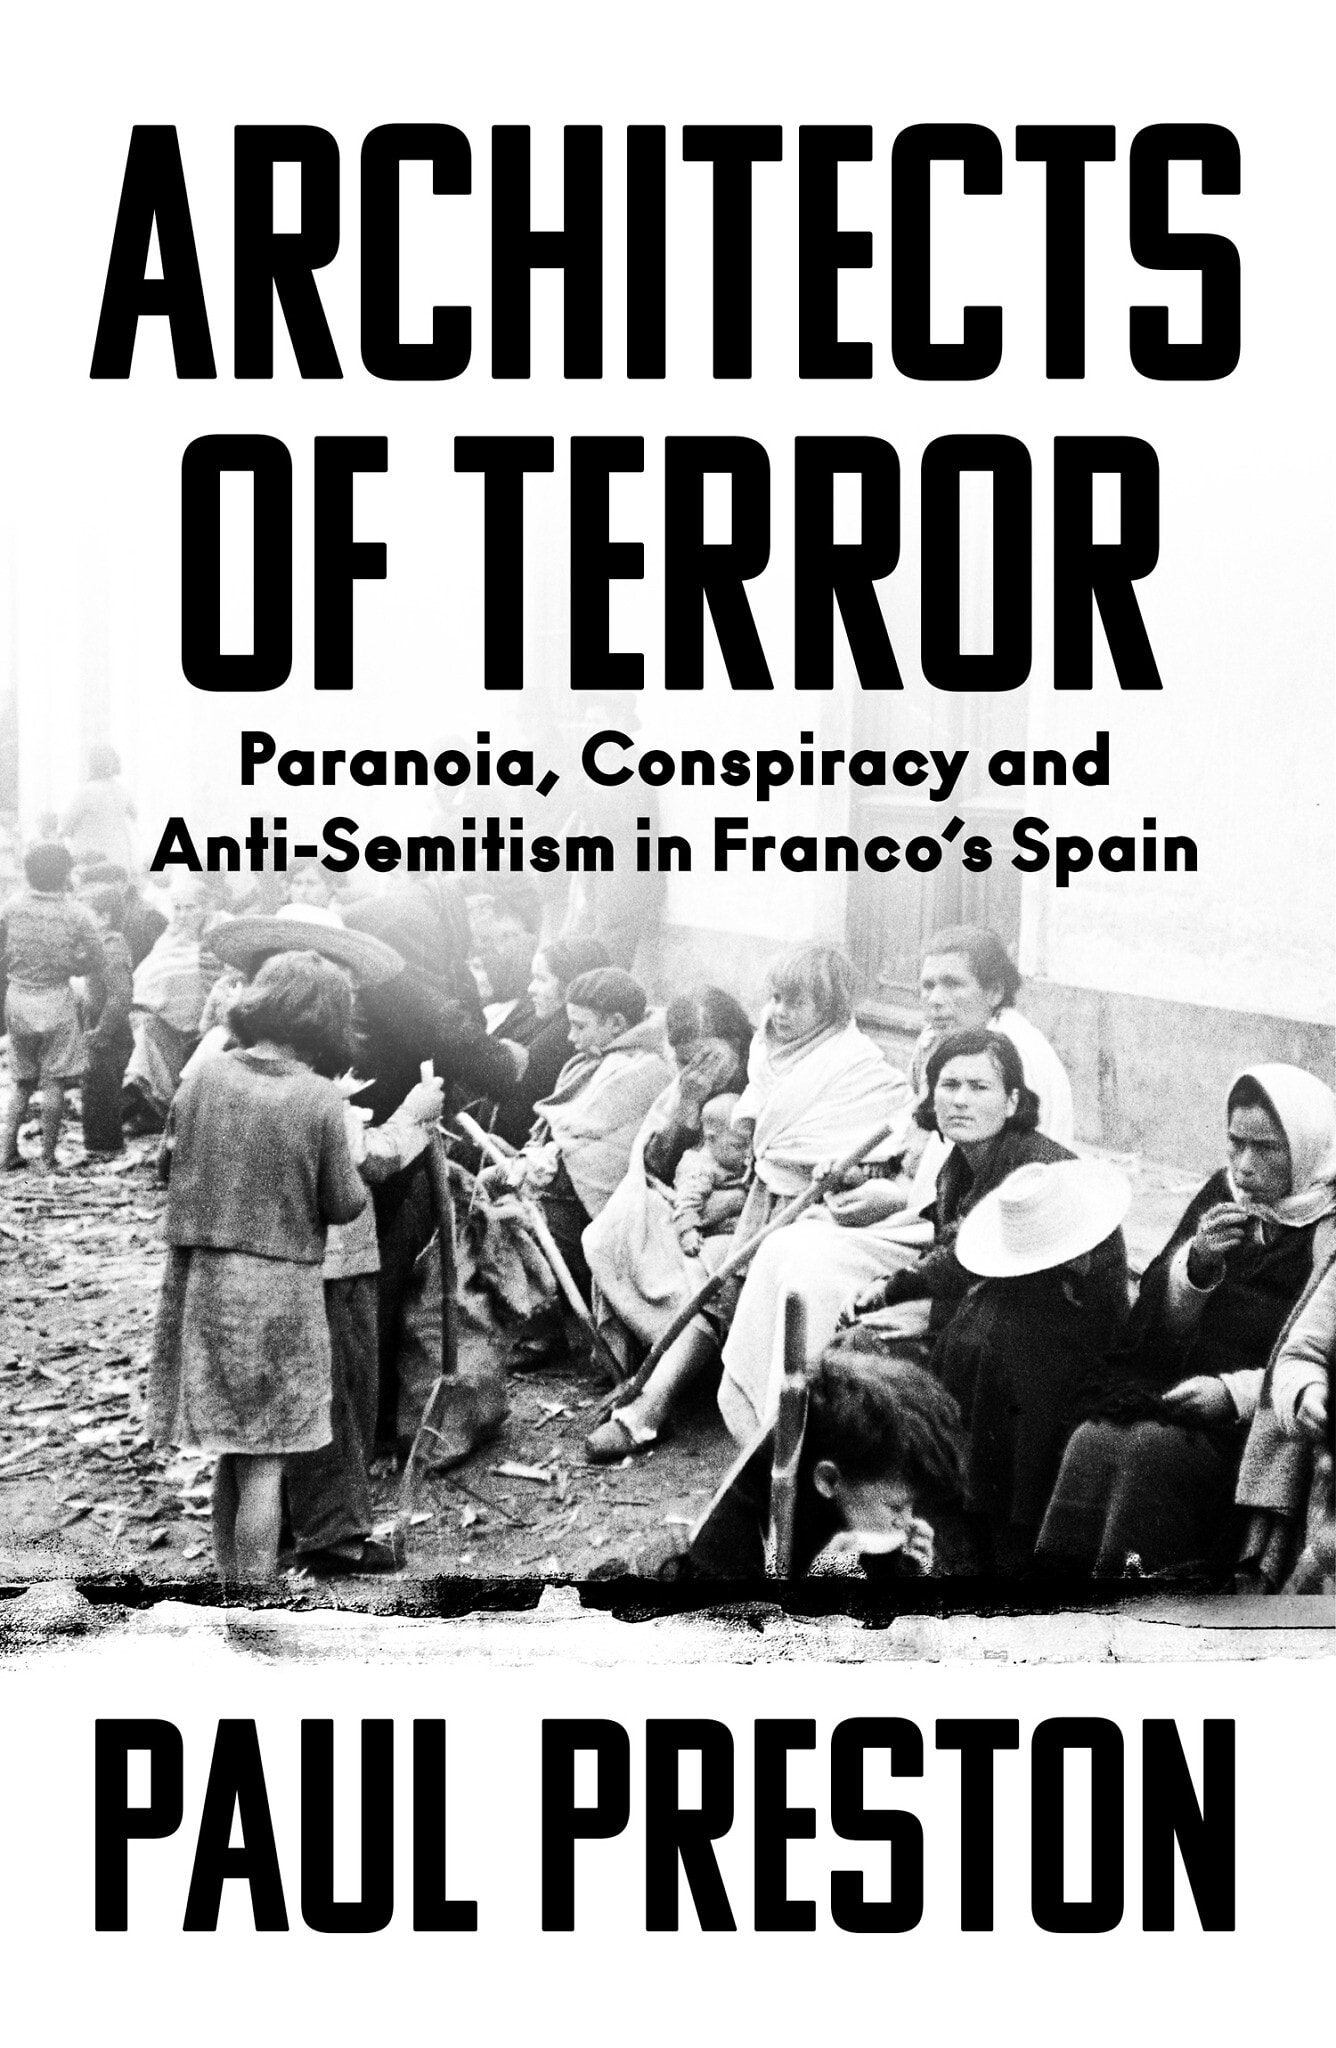 &quot;אדריכלים של טרור: פרנויה, קונספירציה ואנטישמיות בספרד של פרנקו&quot;, ספרו של ההיסטוריון הבריטי סר פול פרסטון